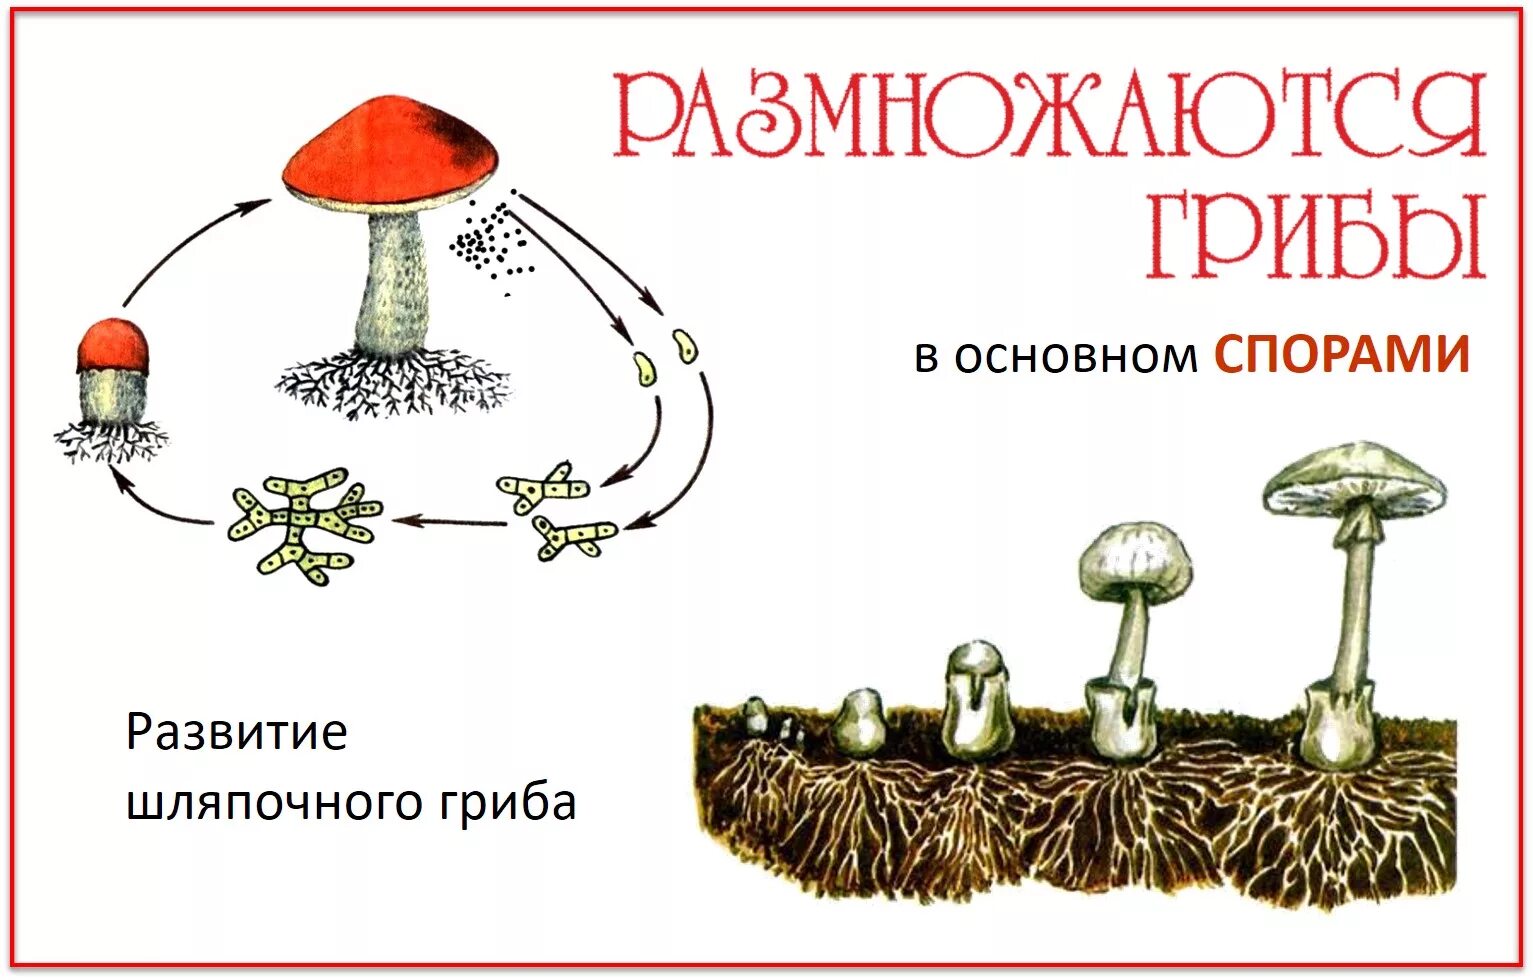 Где образуются грибы. Размножение шляпочного гриба схема. Размножение шляпочных грибов схема. Размножение грибов грибницей. Размножение спорами грибы.